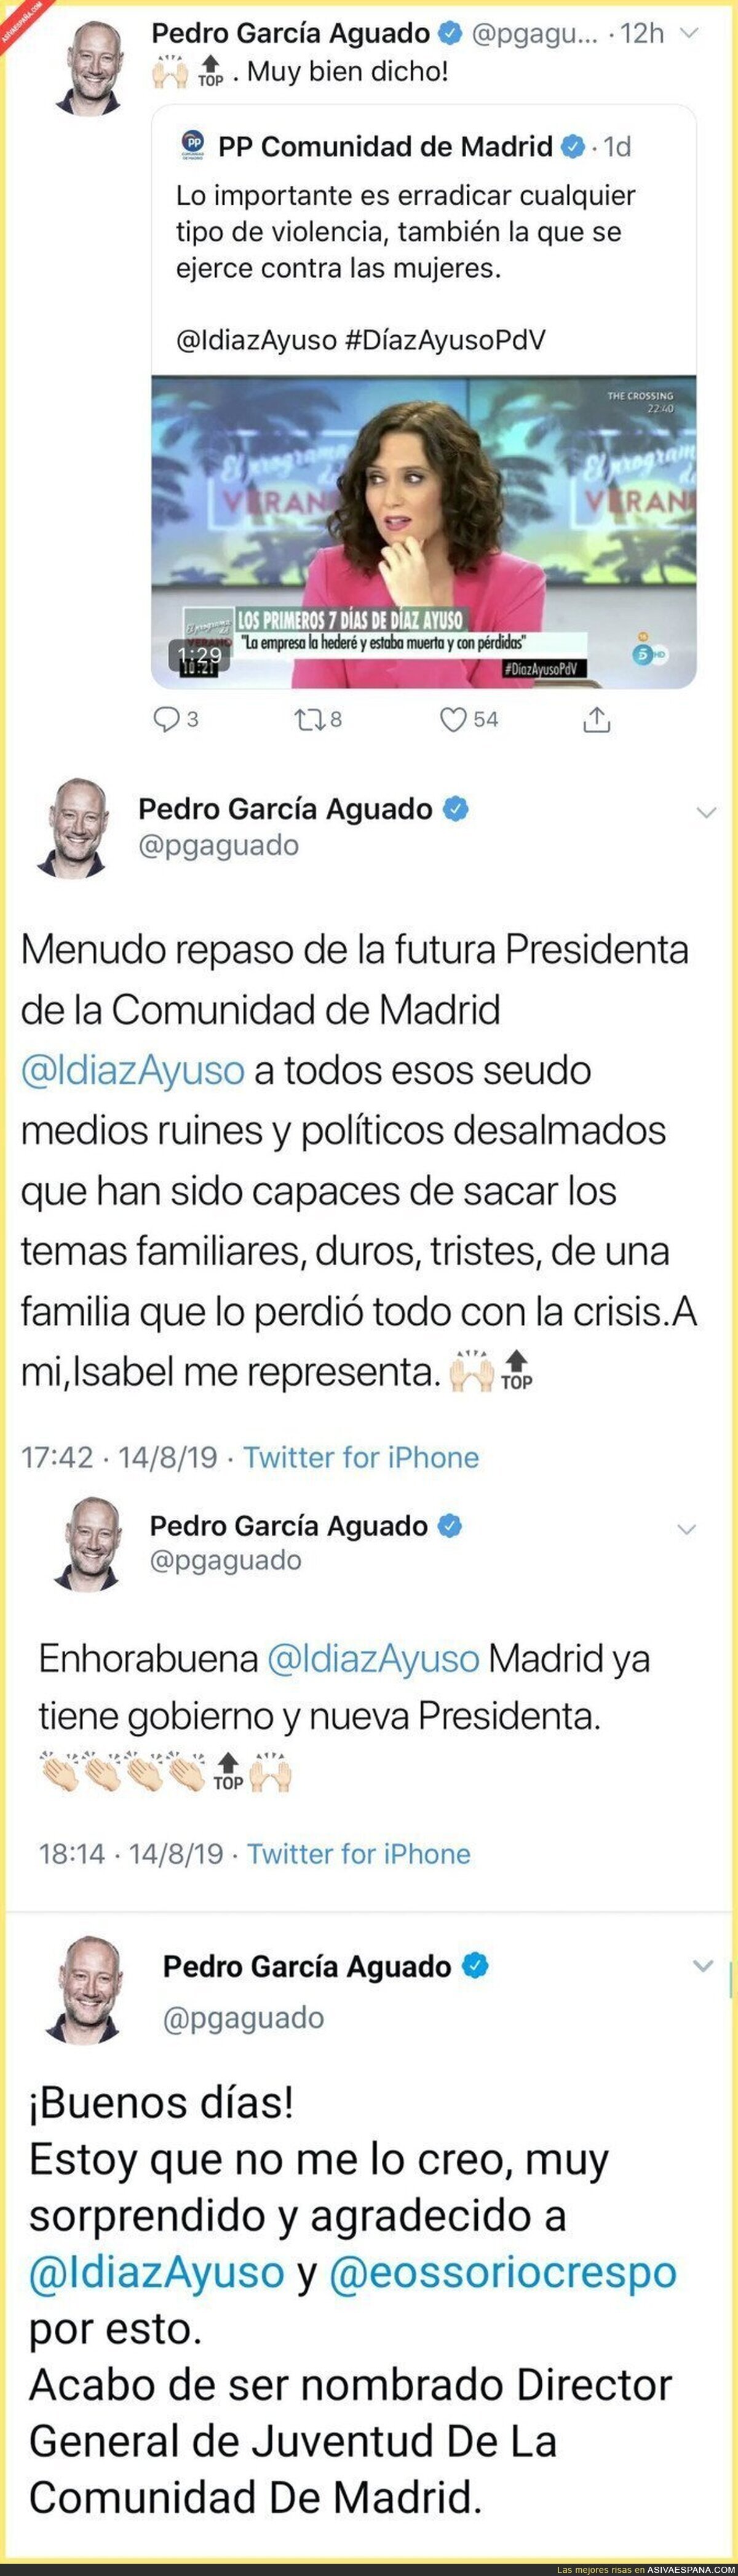 Pedro García Aguado ganándose un trabajo sin mucho esfuerzo en pocos tuits